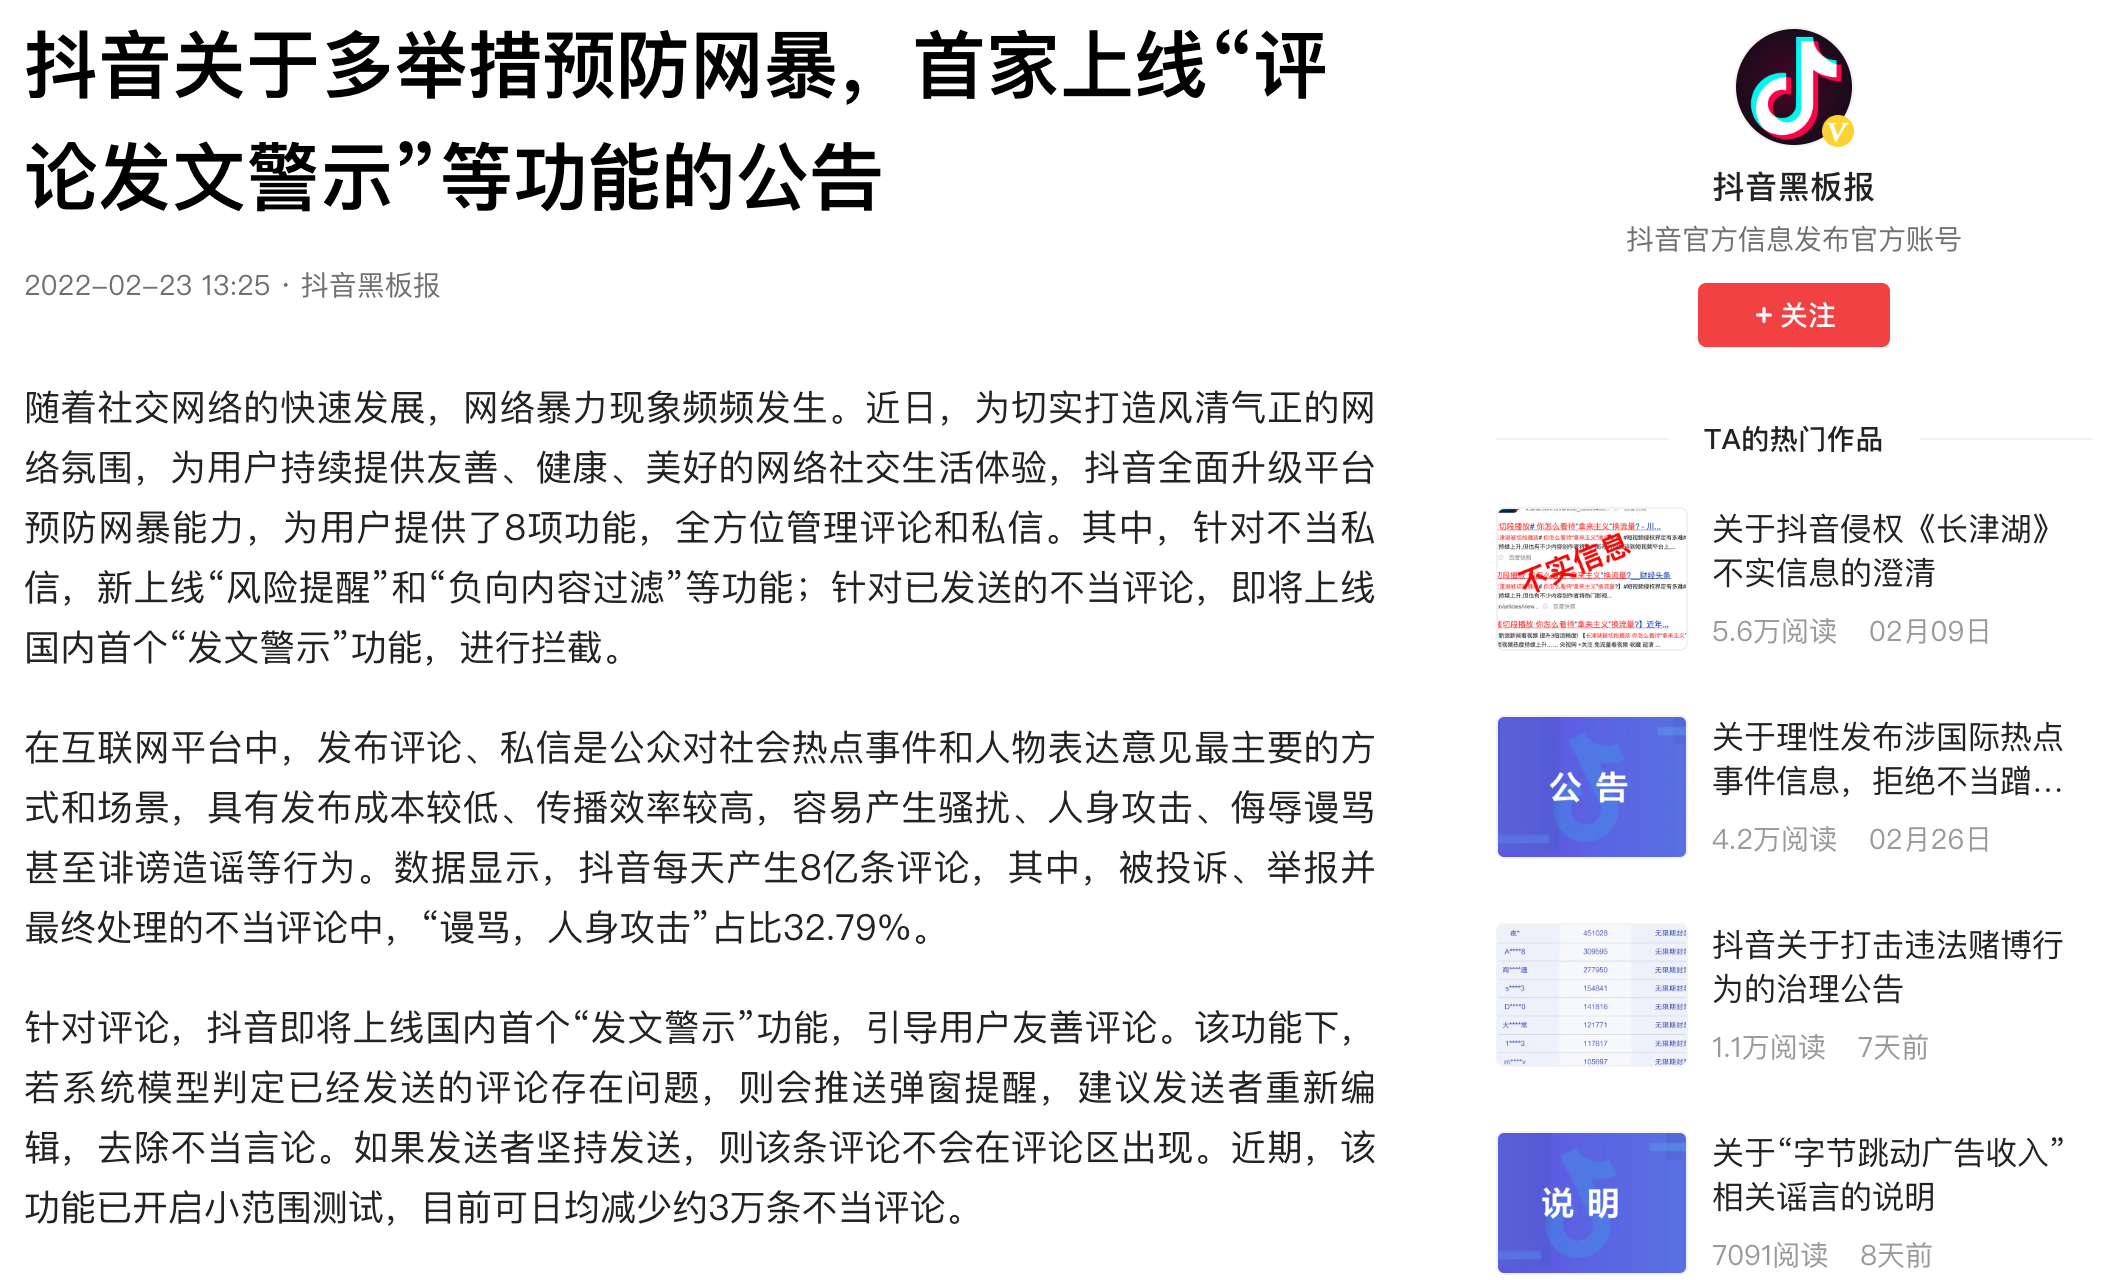 fawenjingshi - Le nuove funzioni che Weibo, Douban e Douyin stanno svolgendo hanno finalmente reso la cyber-violenza non più irrisolta